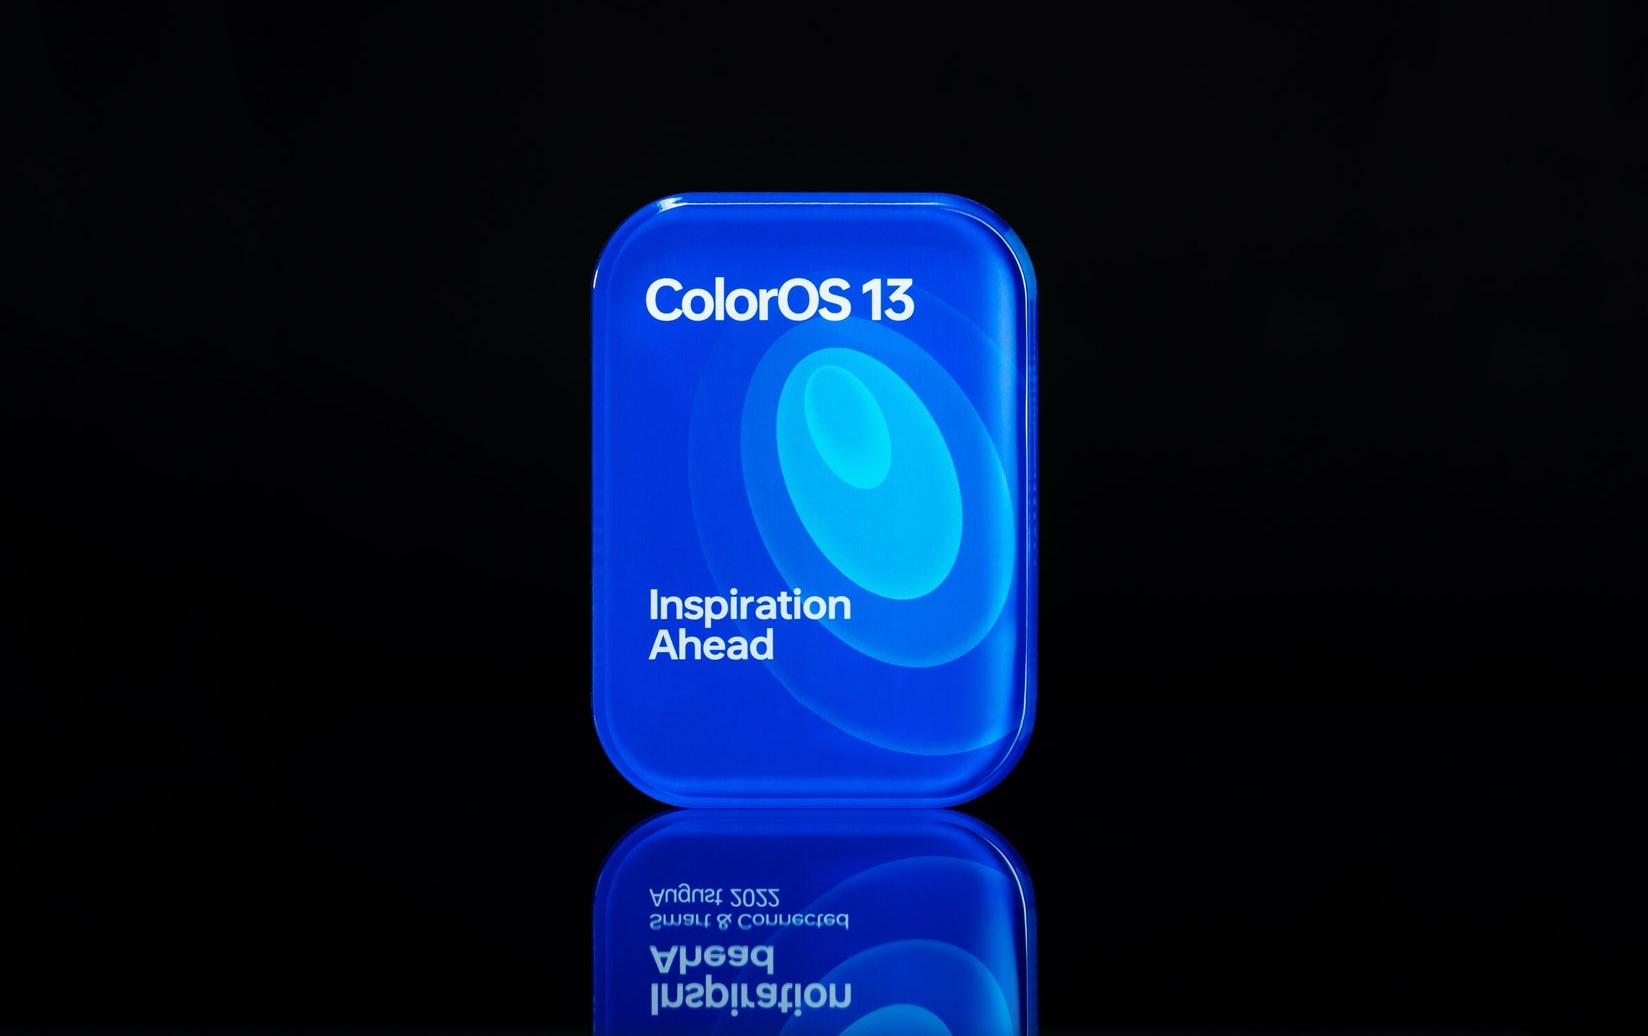 OPPO dévoile la coque ColorOS 13 basée sur Android 13